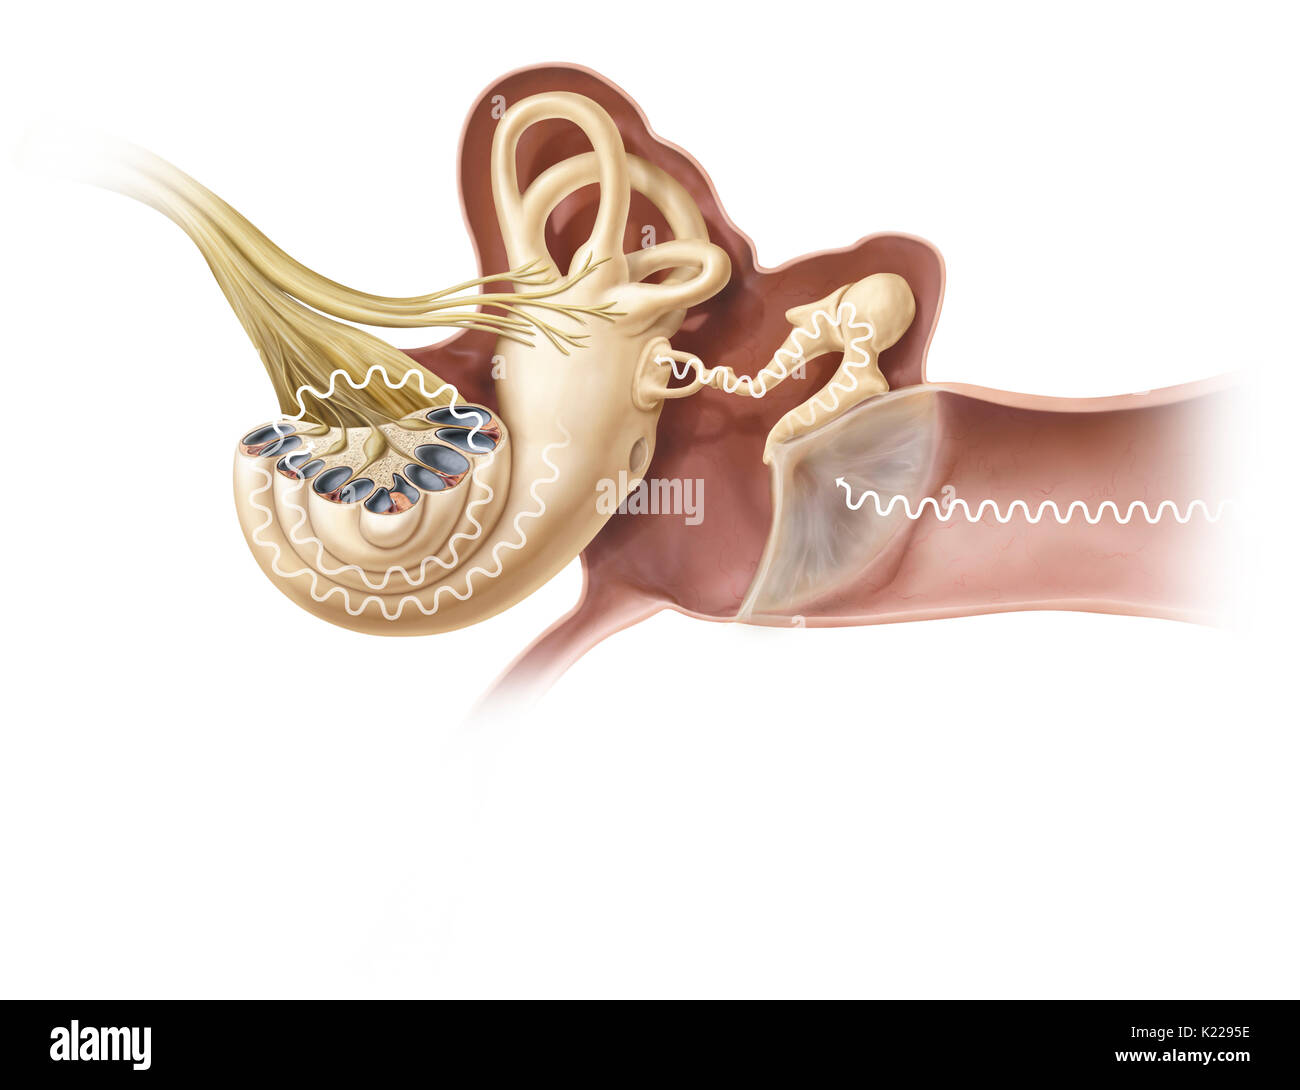 La pinna acquisisce vibrazioni sonore e li indirizza verso il condotto uditivo esterno dove fanno la membrana timpanica vibrare; tre ossicoli amplificarli e li trasmette alla coclea che poi li trasforma in un impulso nervoso. Foto Stock